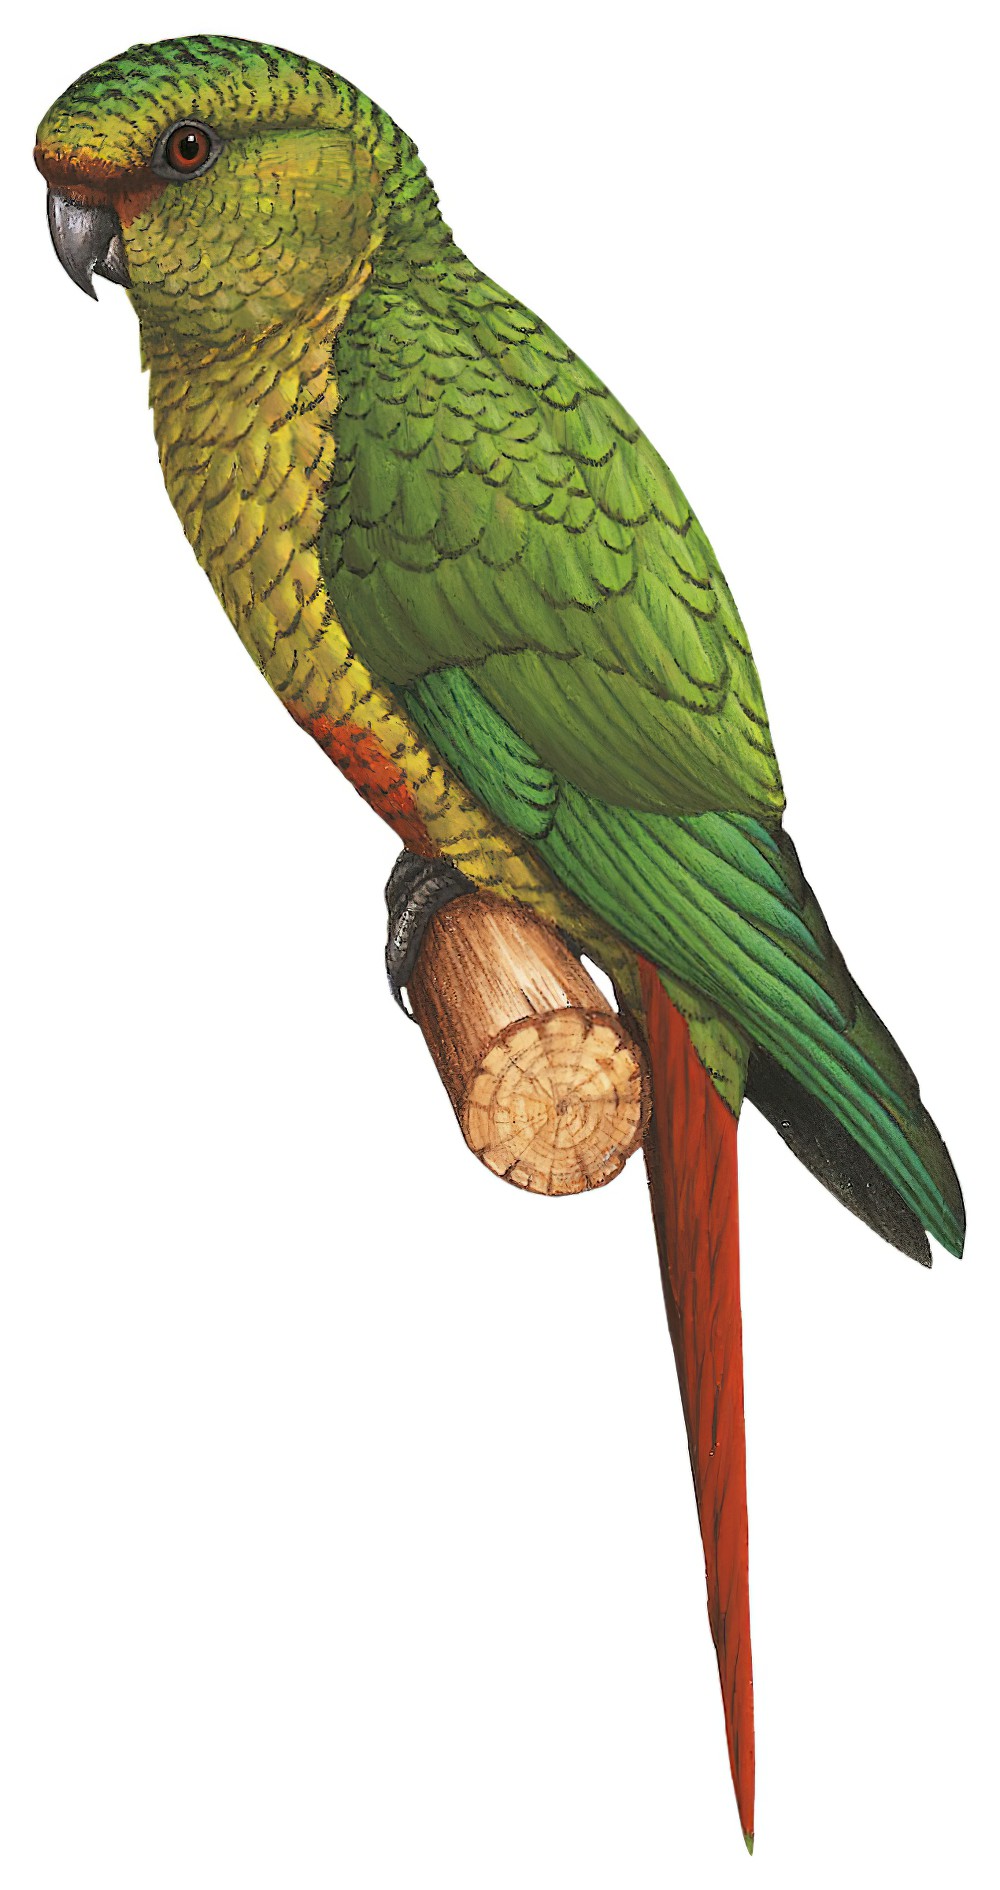 Austral Parakeet / Enicognathus ferrugineus